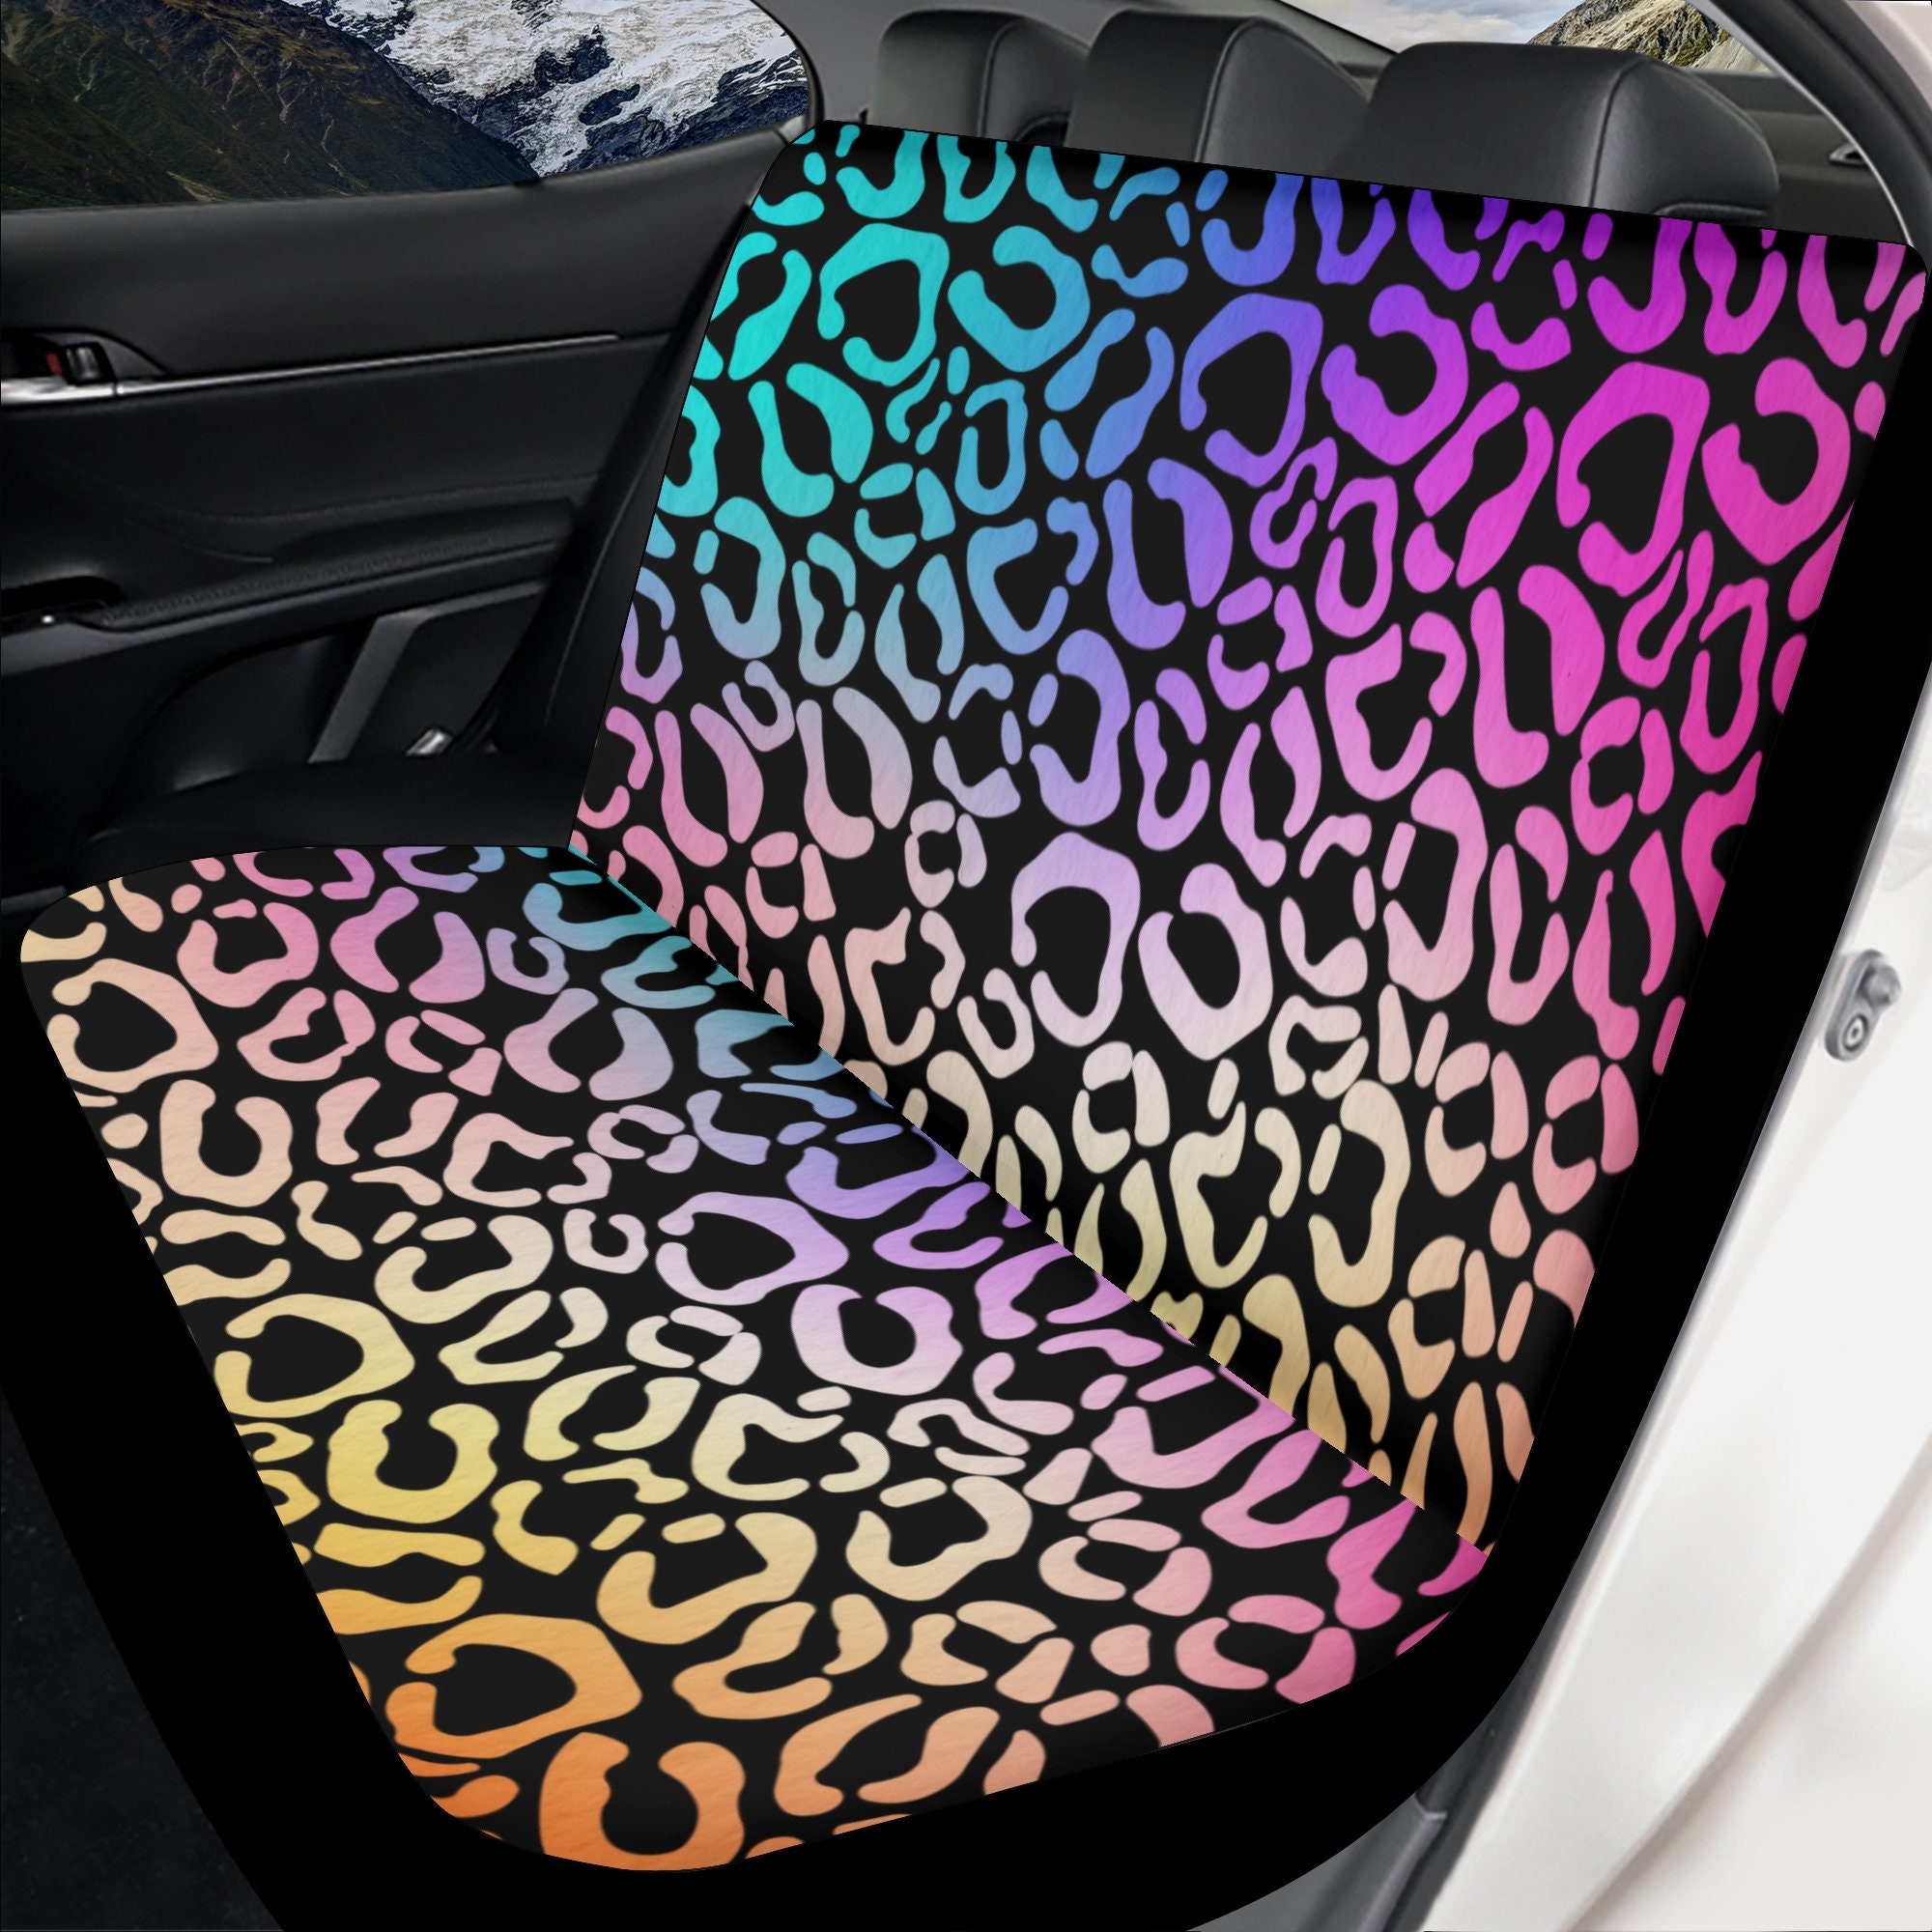 Regenbogen Leopard Auto Sitzbezüge für Fahrzeug Full Set, Animal Print  Sitzbezüge für Auto für Frauen Bunt, Neon Effekt Sitzbezug, Auto Geschenk -   Österreich